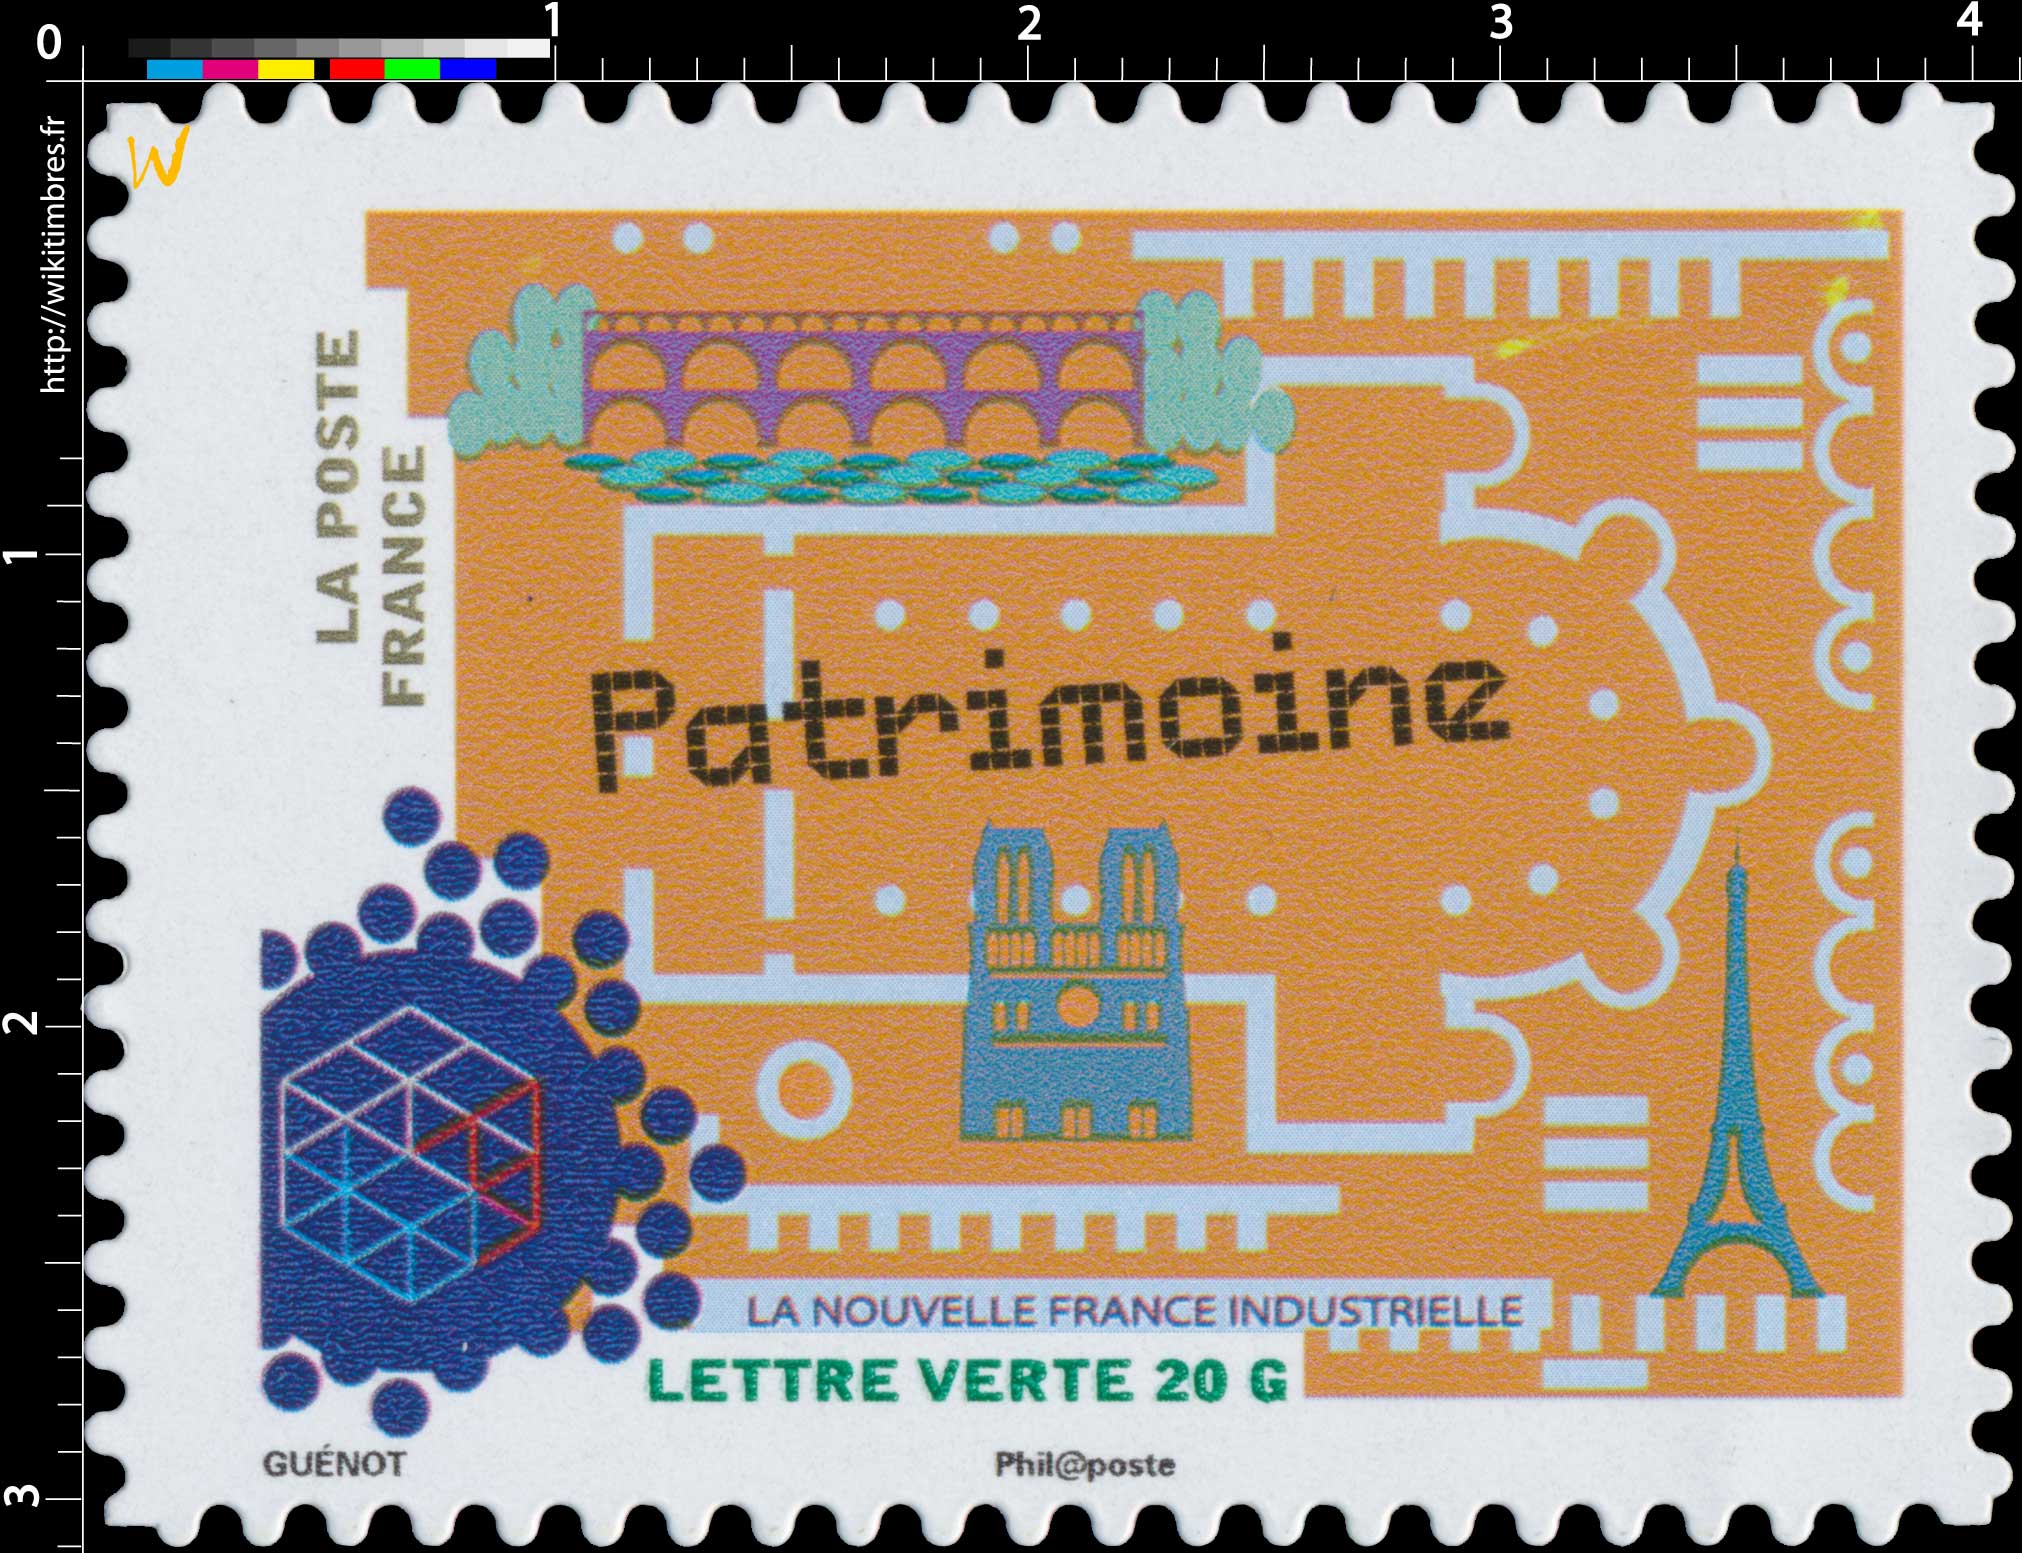 2014 La nouvelle France industrielle - Patrimoine